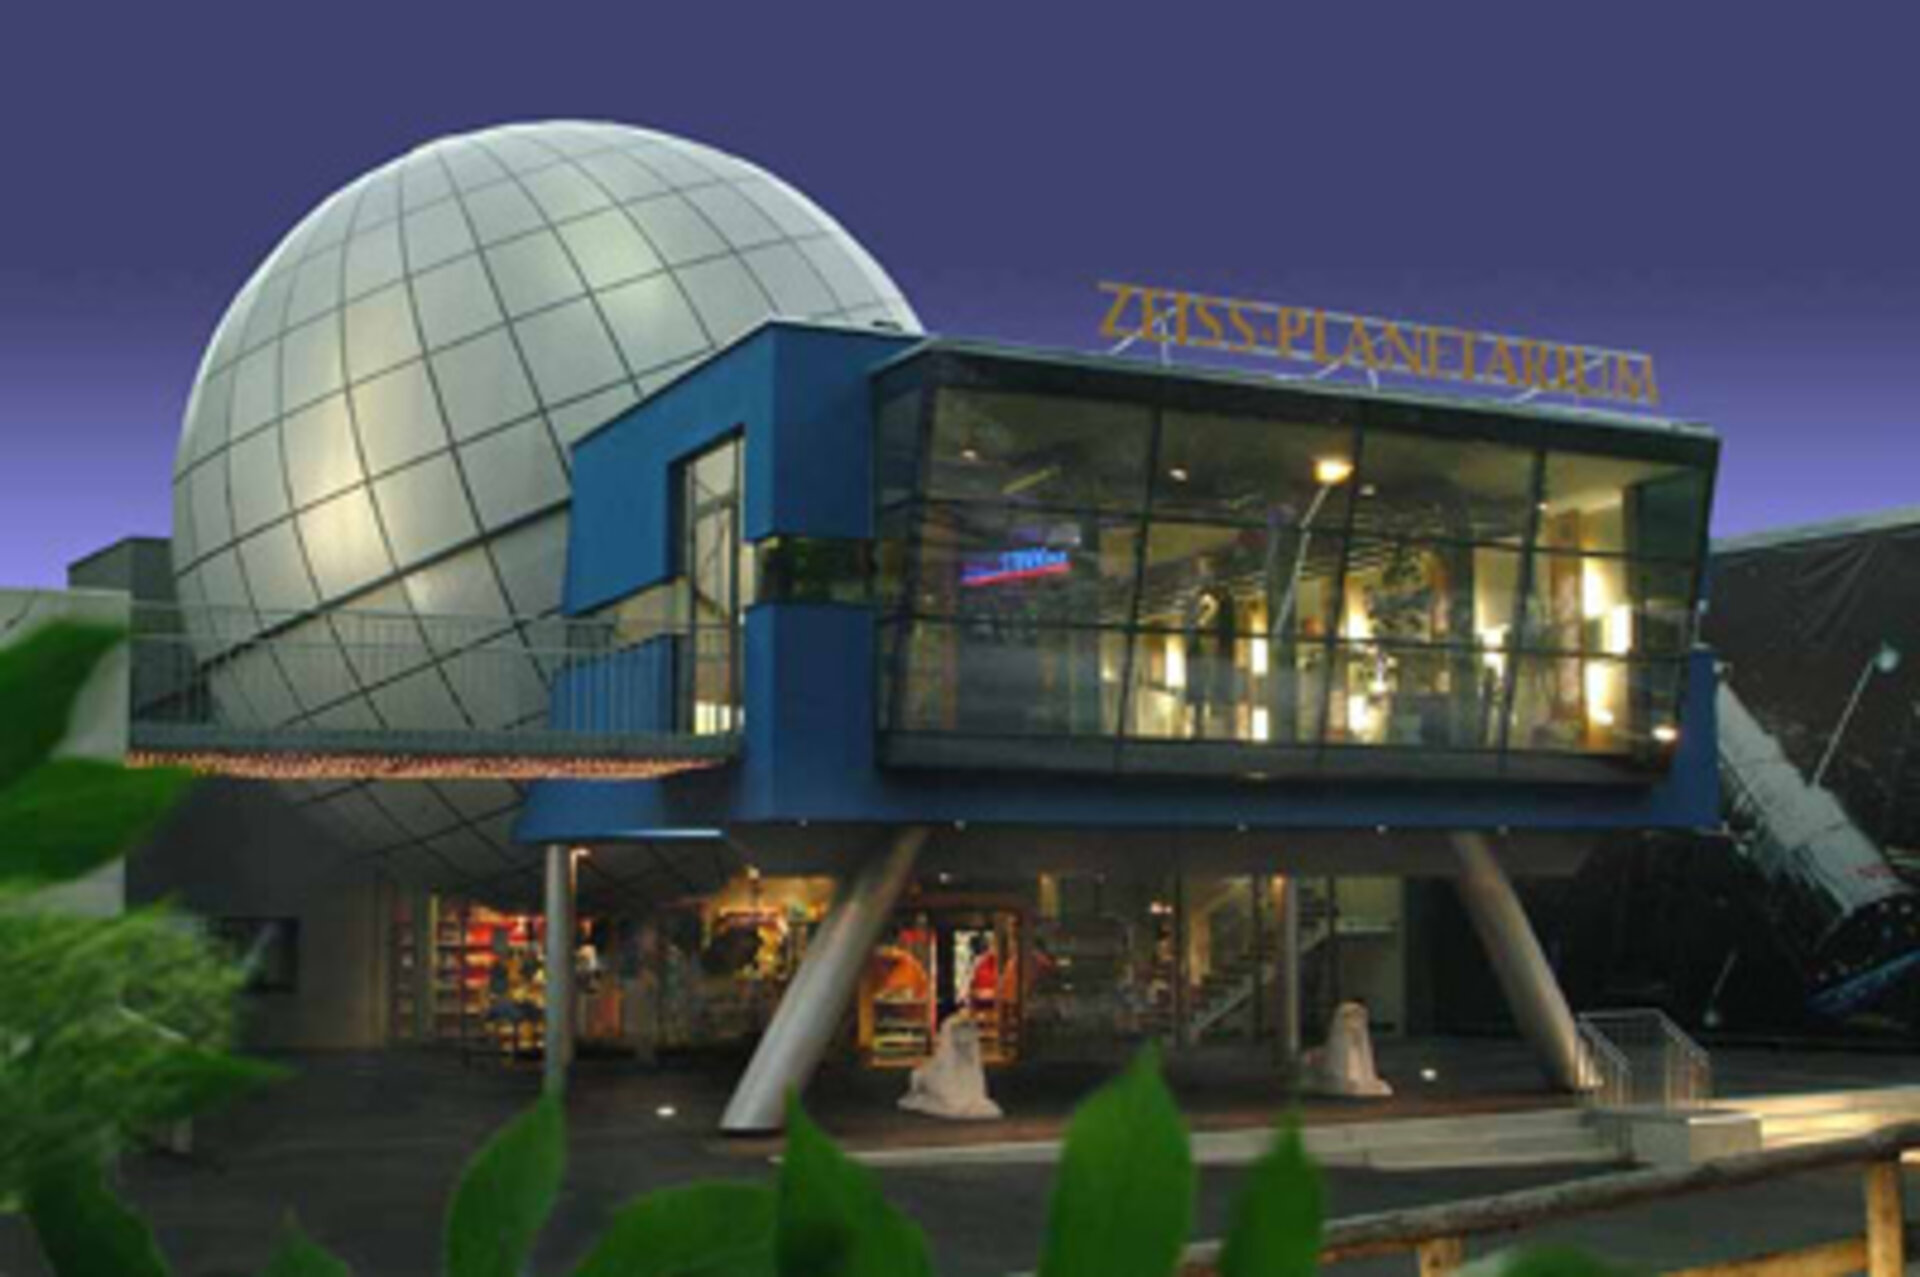 Das Zeiss-Planetarium Schwaz